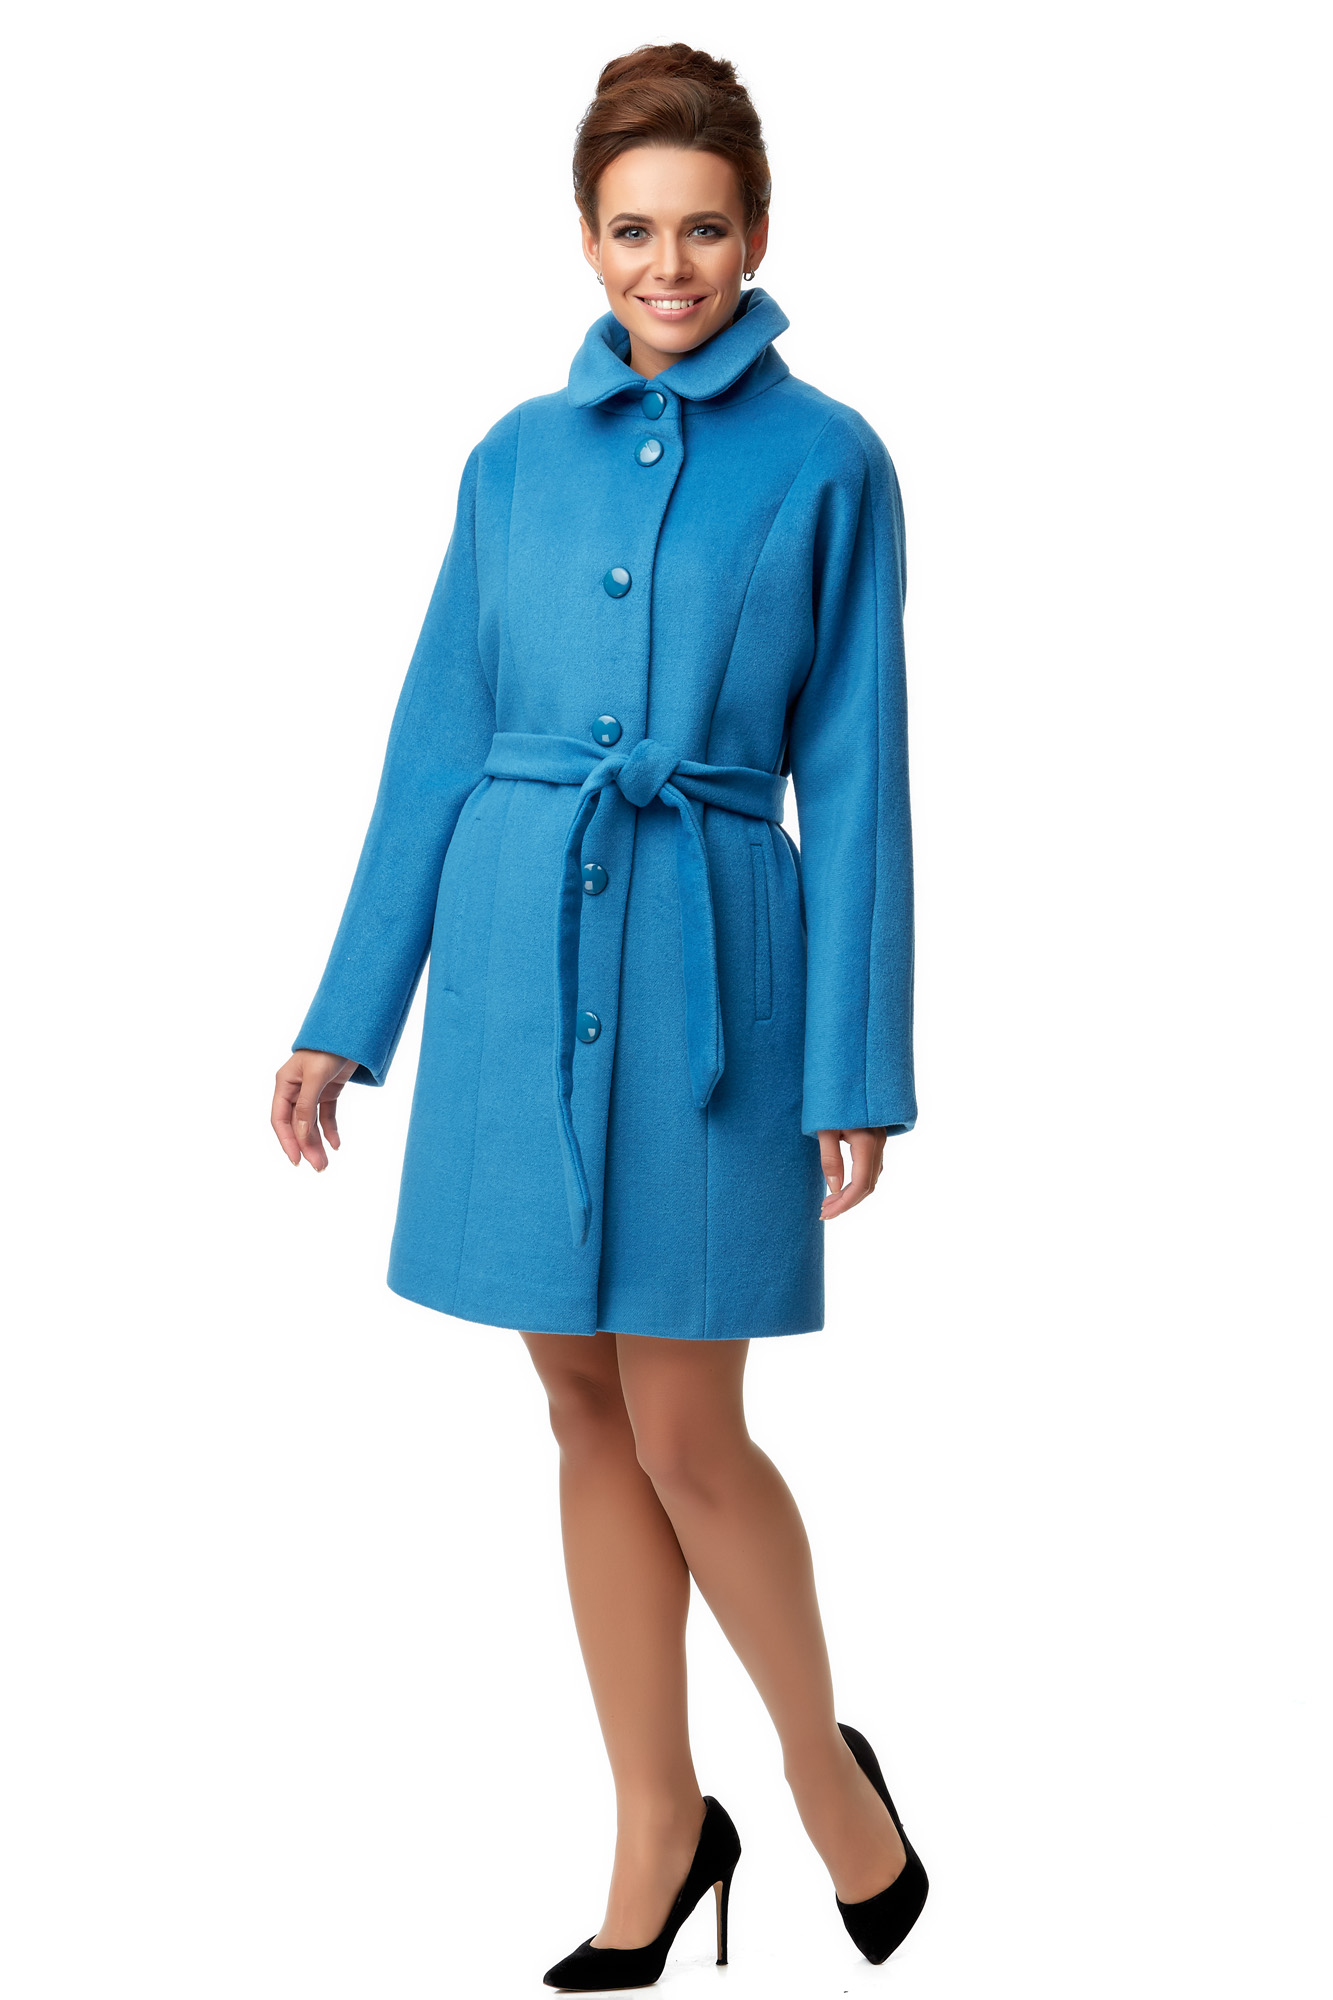 Женское пальто из текстиля с воротником 8000909-2